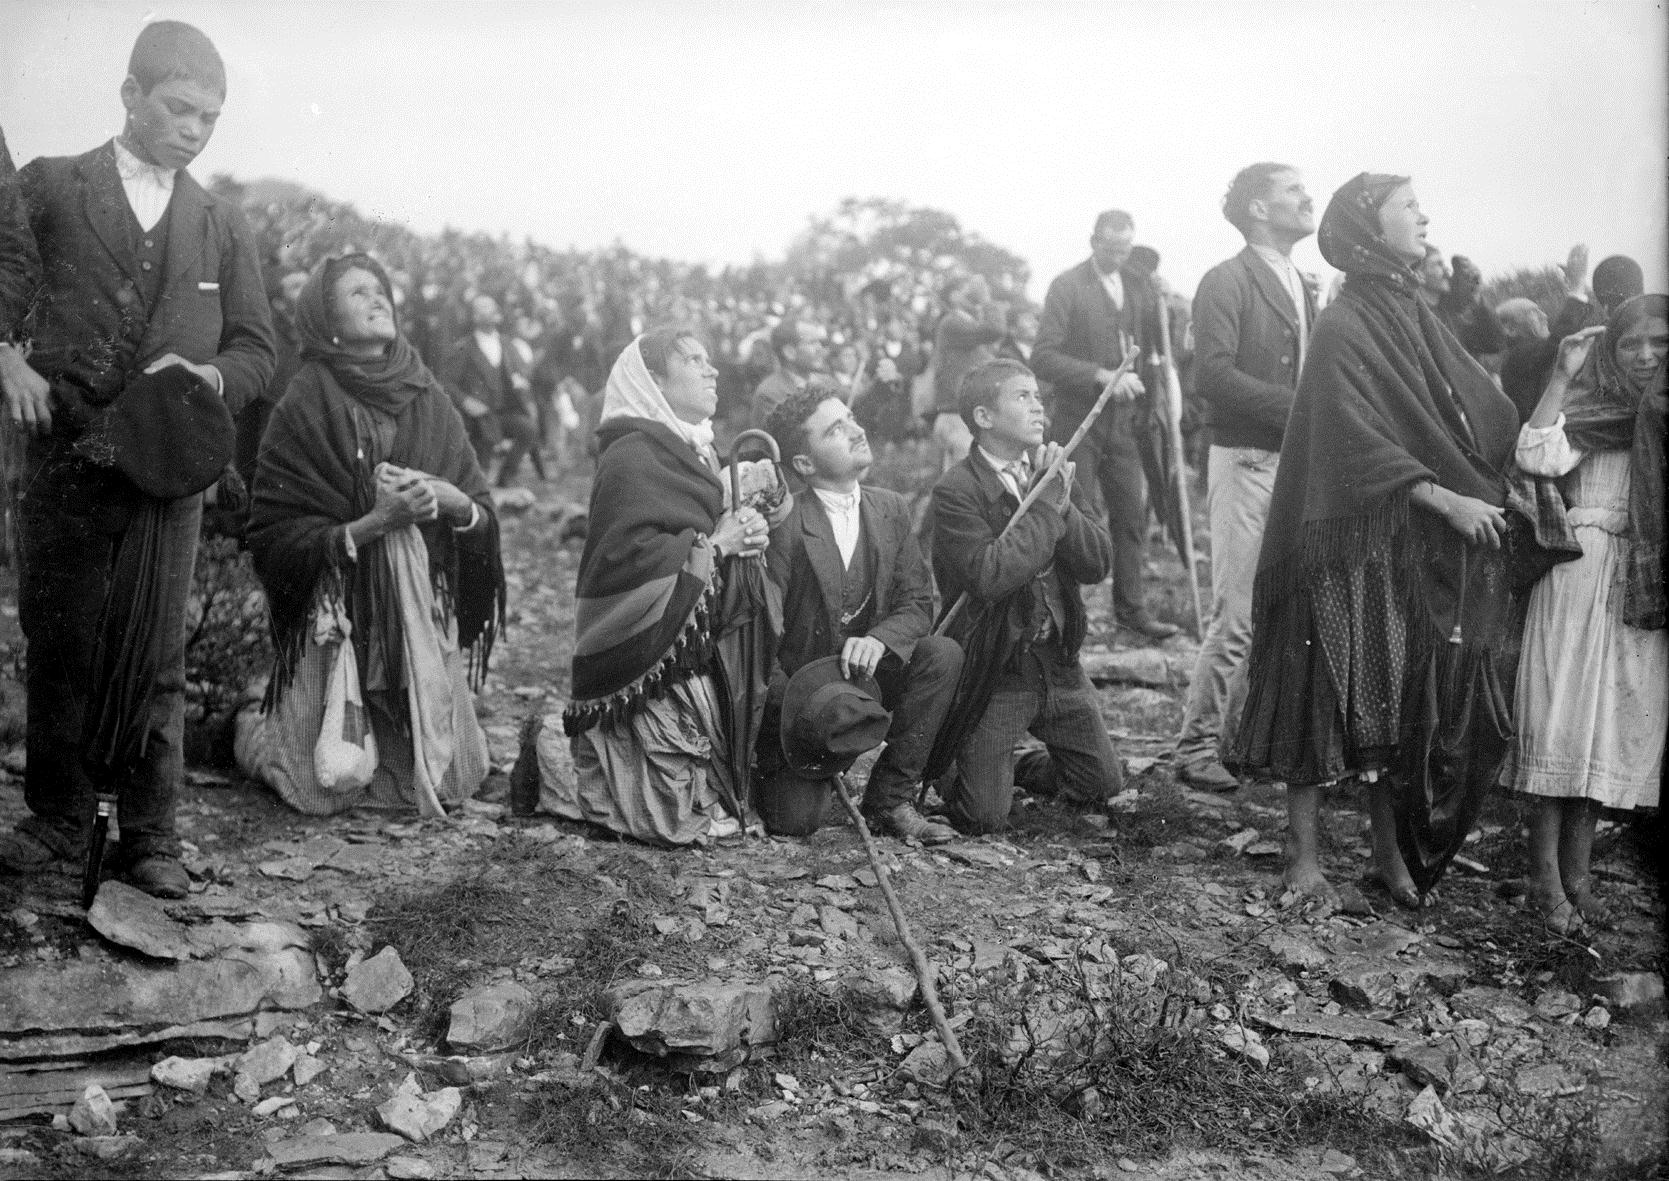 Aufnahme der Anwesenden während des Sonnenwunders in Fatima (1917)